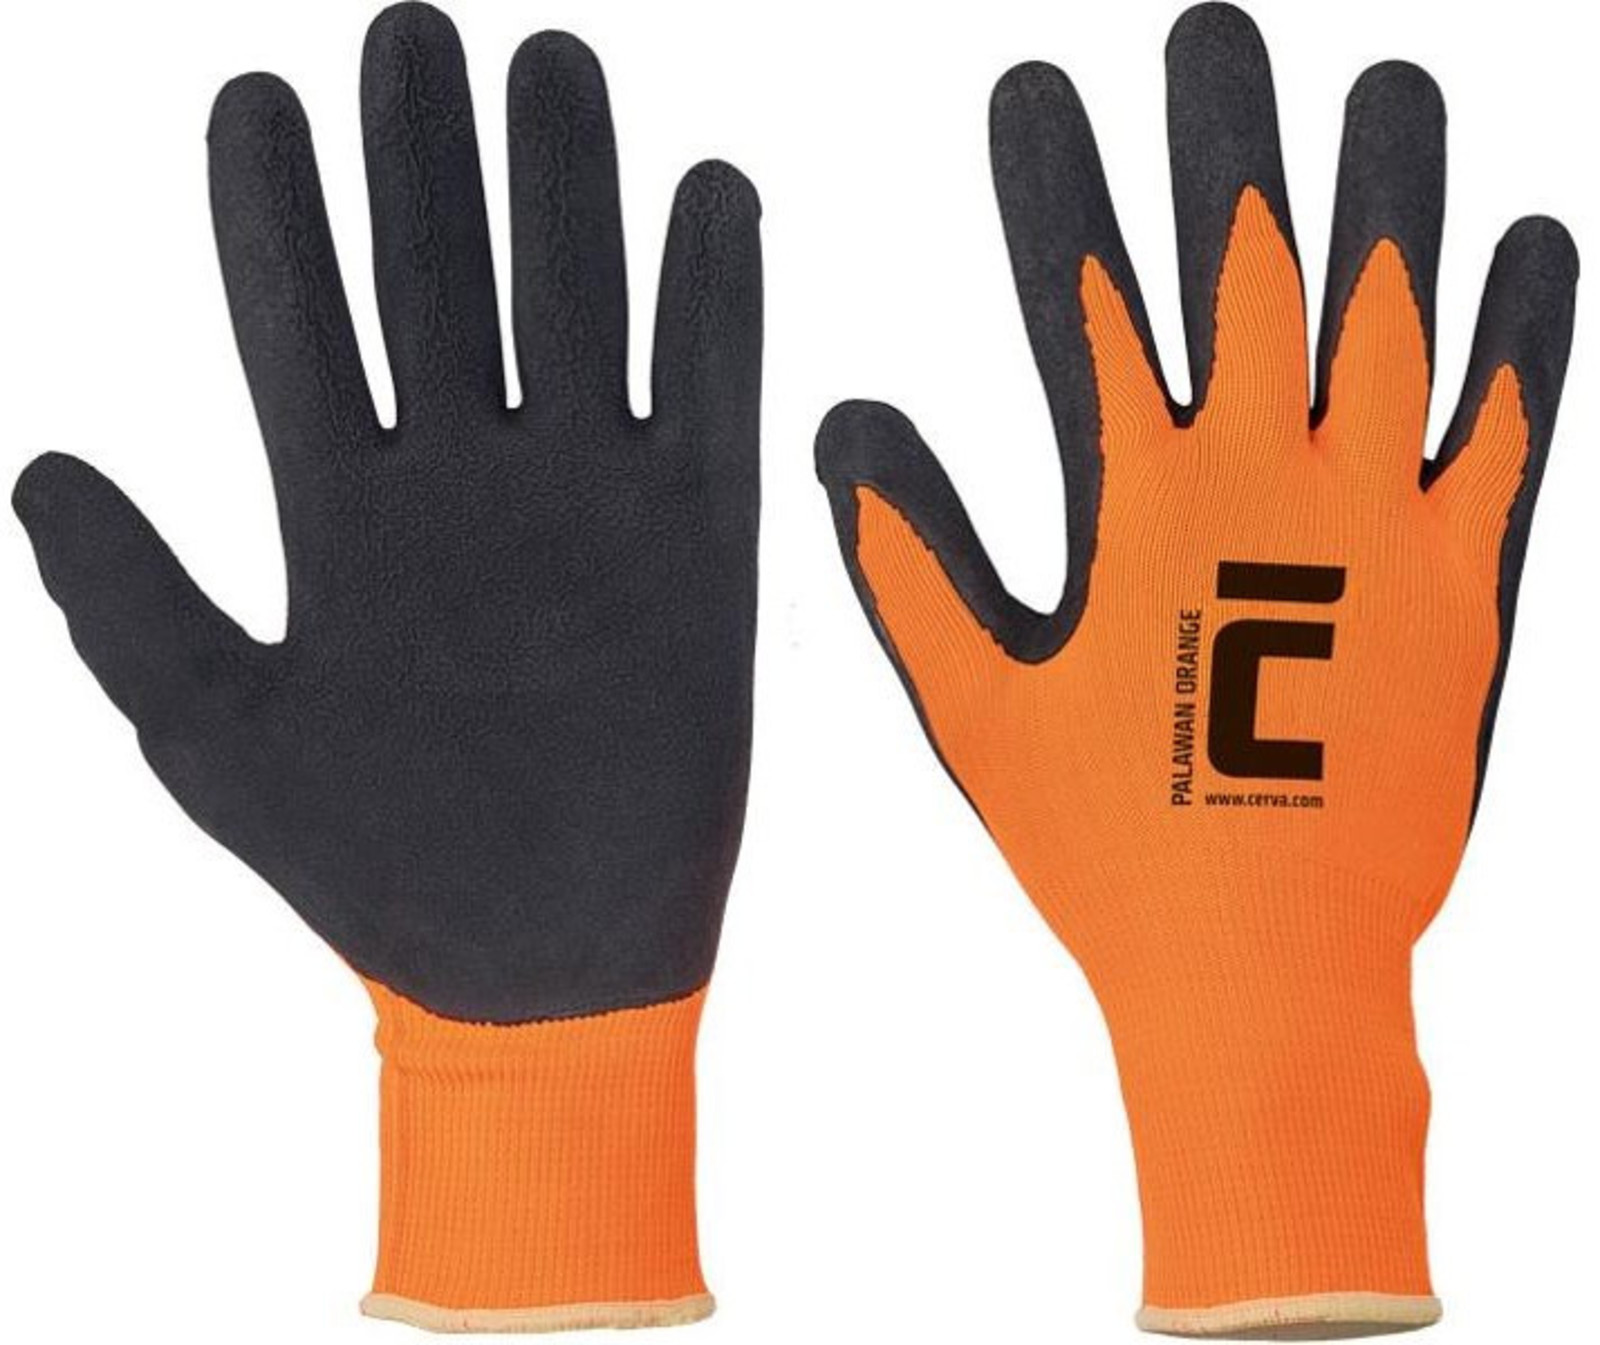 Pracovné rukavice Cerva Palawan - veľkosť: 9/L, farba: oranžová